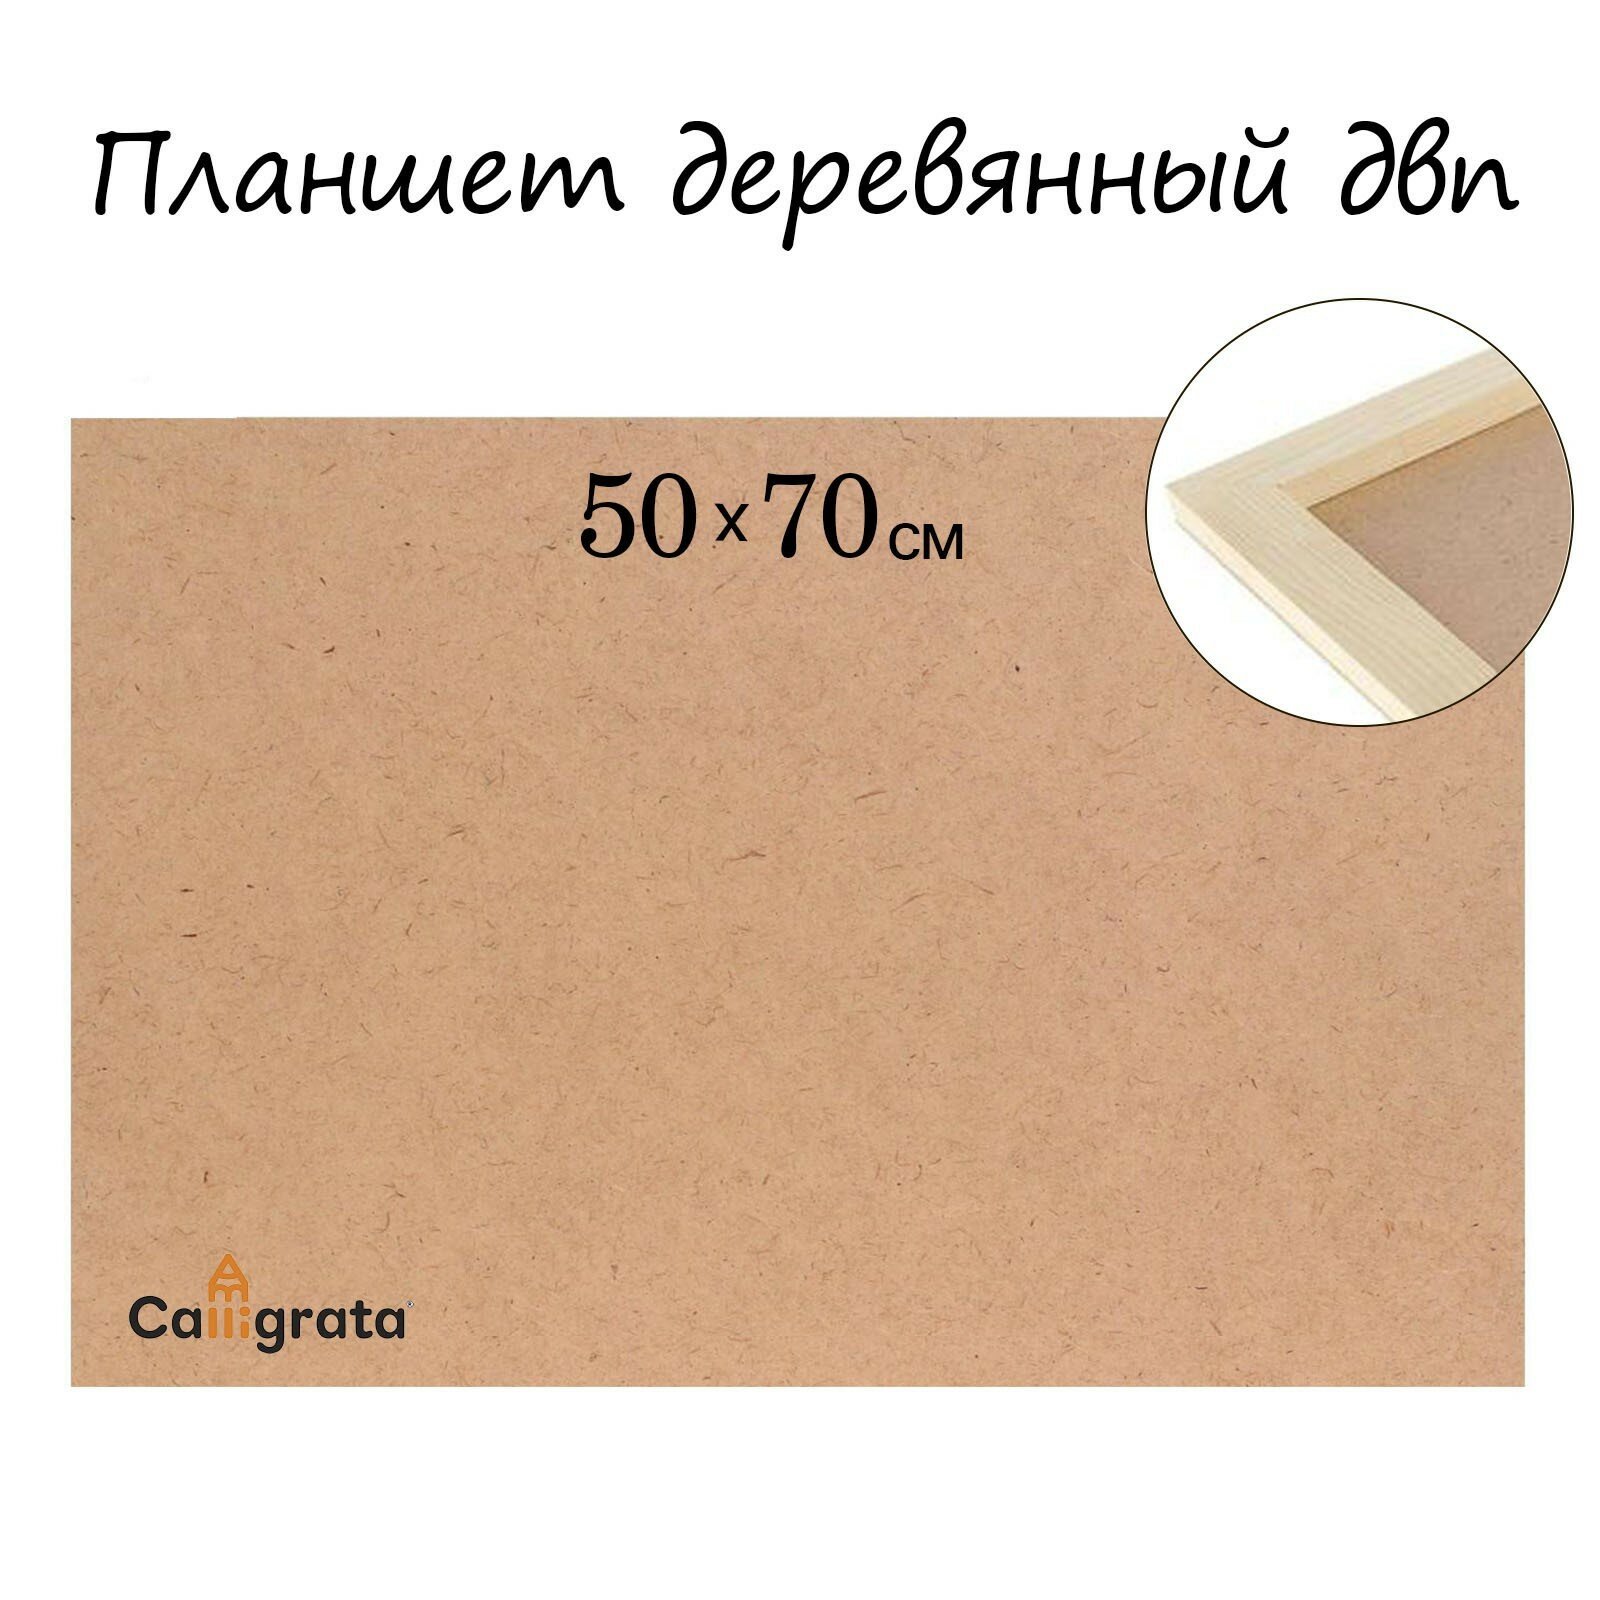 Планшет деревянный ДВП 50*70*2 см Calligrata